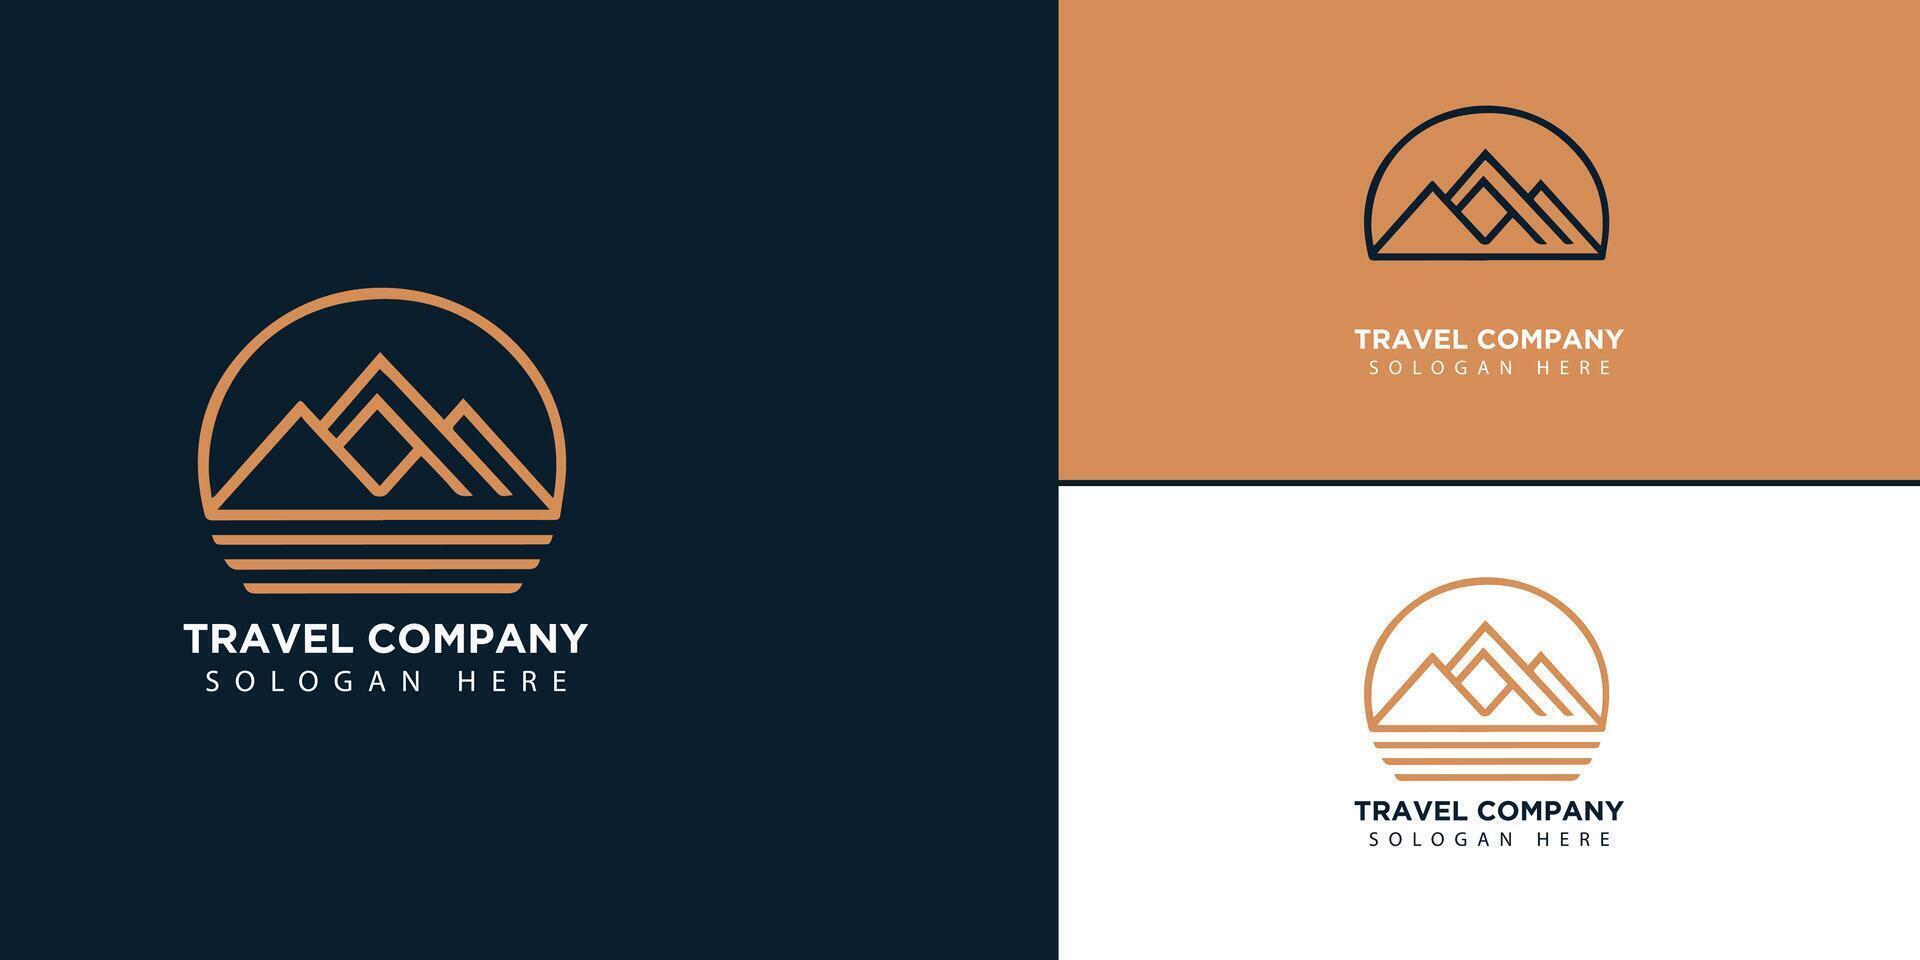 détaillé Voyage logo Voyage logo vecteur Voyage logo avec homme valise silhouette vecteur modèles vecteur